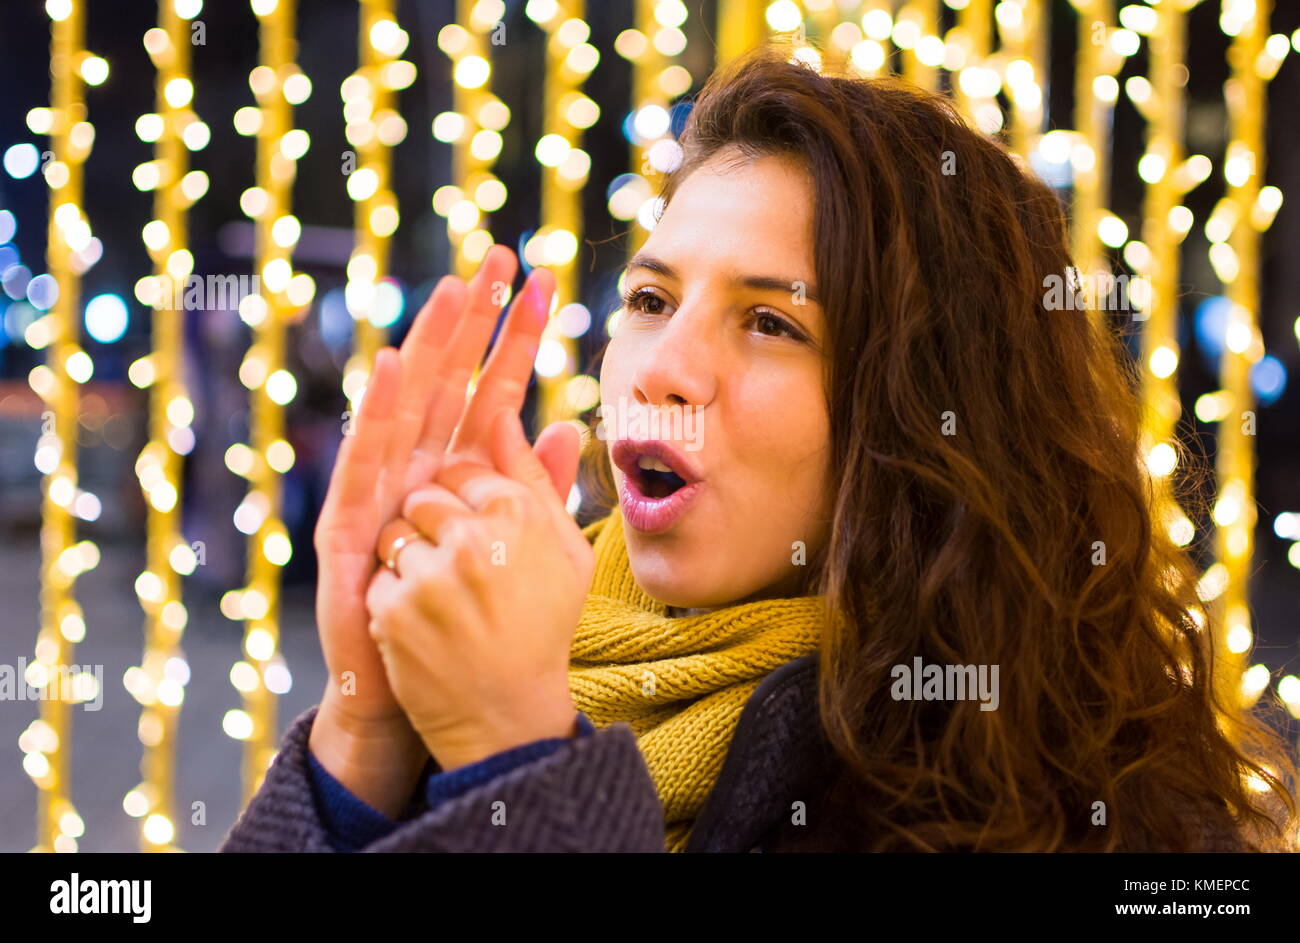 Mädchen Aufwärmen ihre Hände im Winter mit festlichen Hintergrund Stockfoto